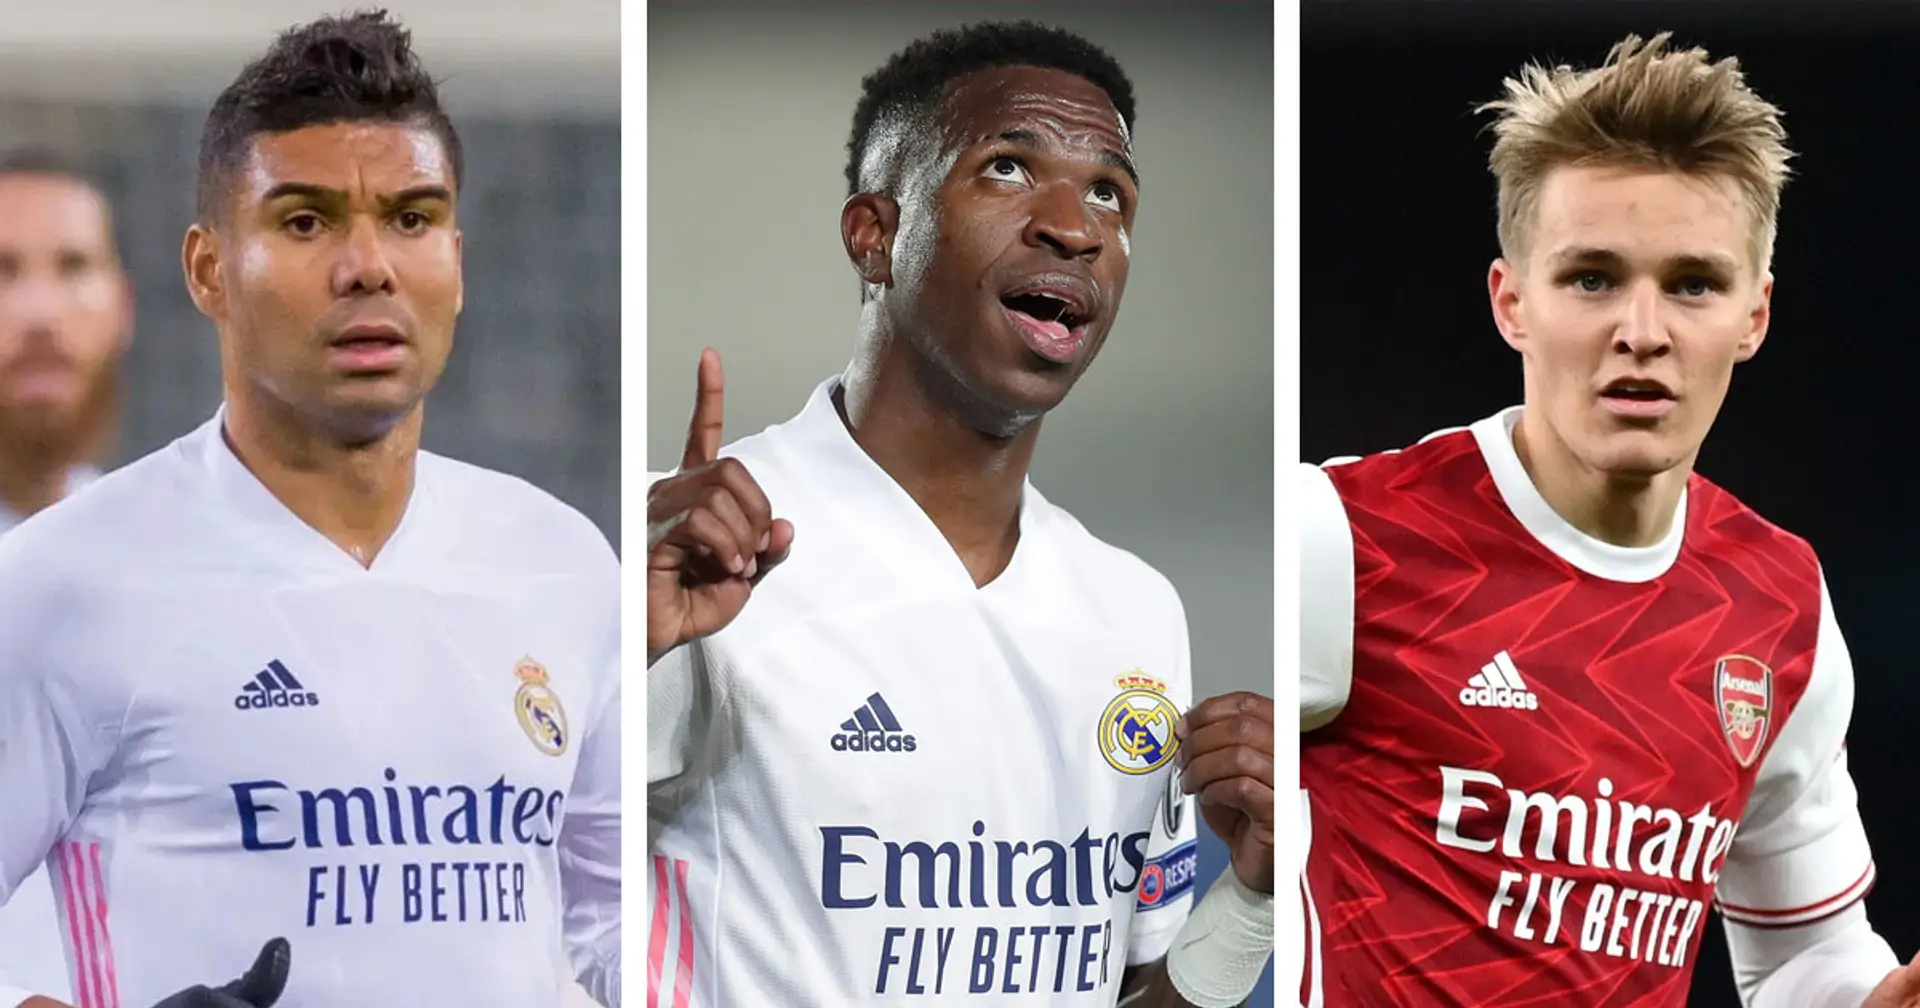 Madrid identifiziert 5 unantastbare Spieler, mehrere große Namen fehlen